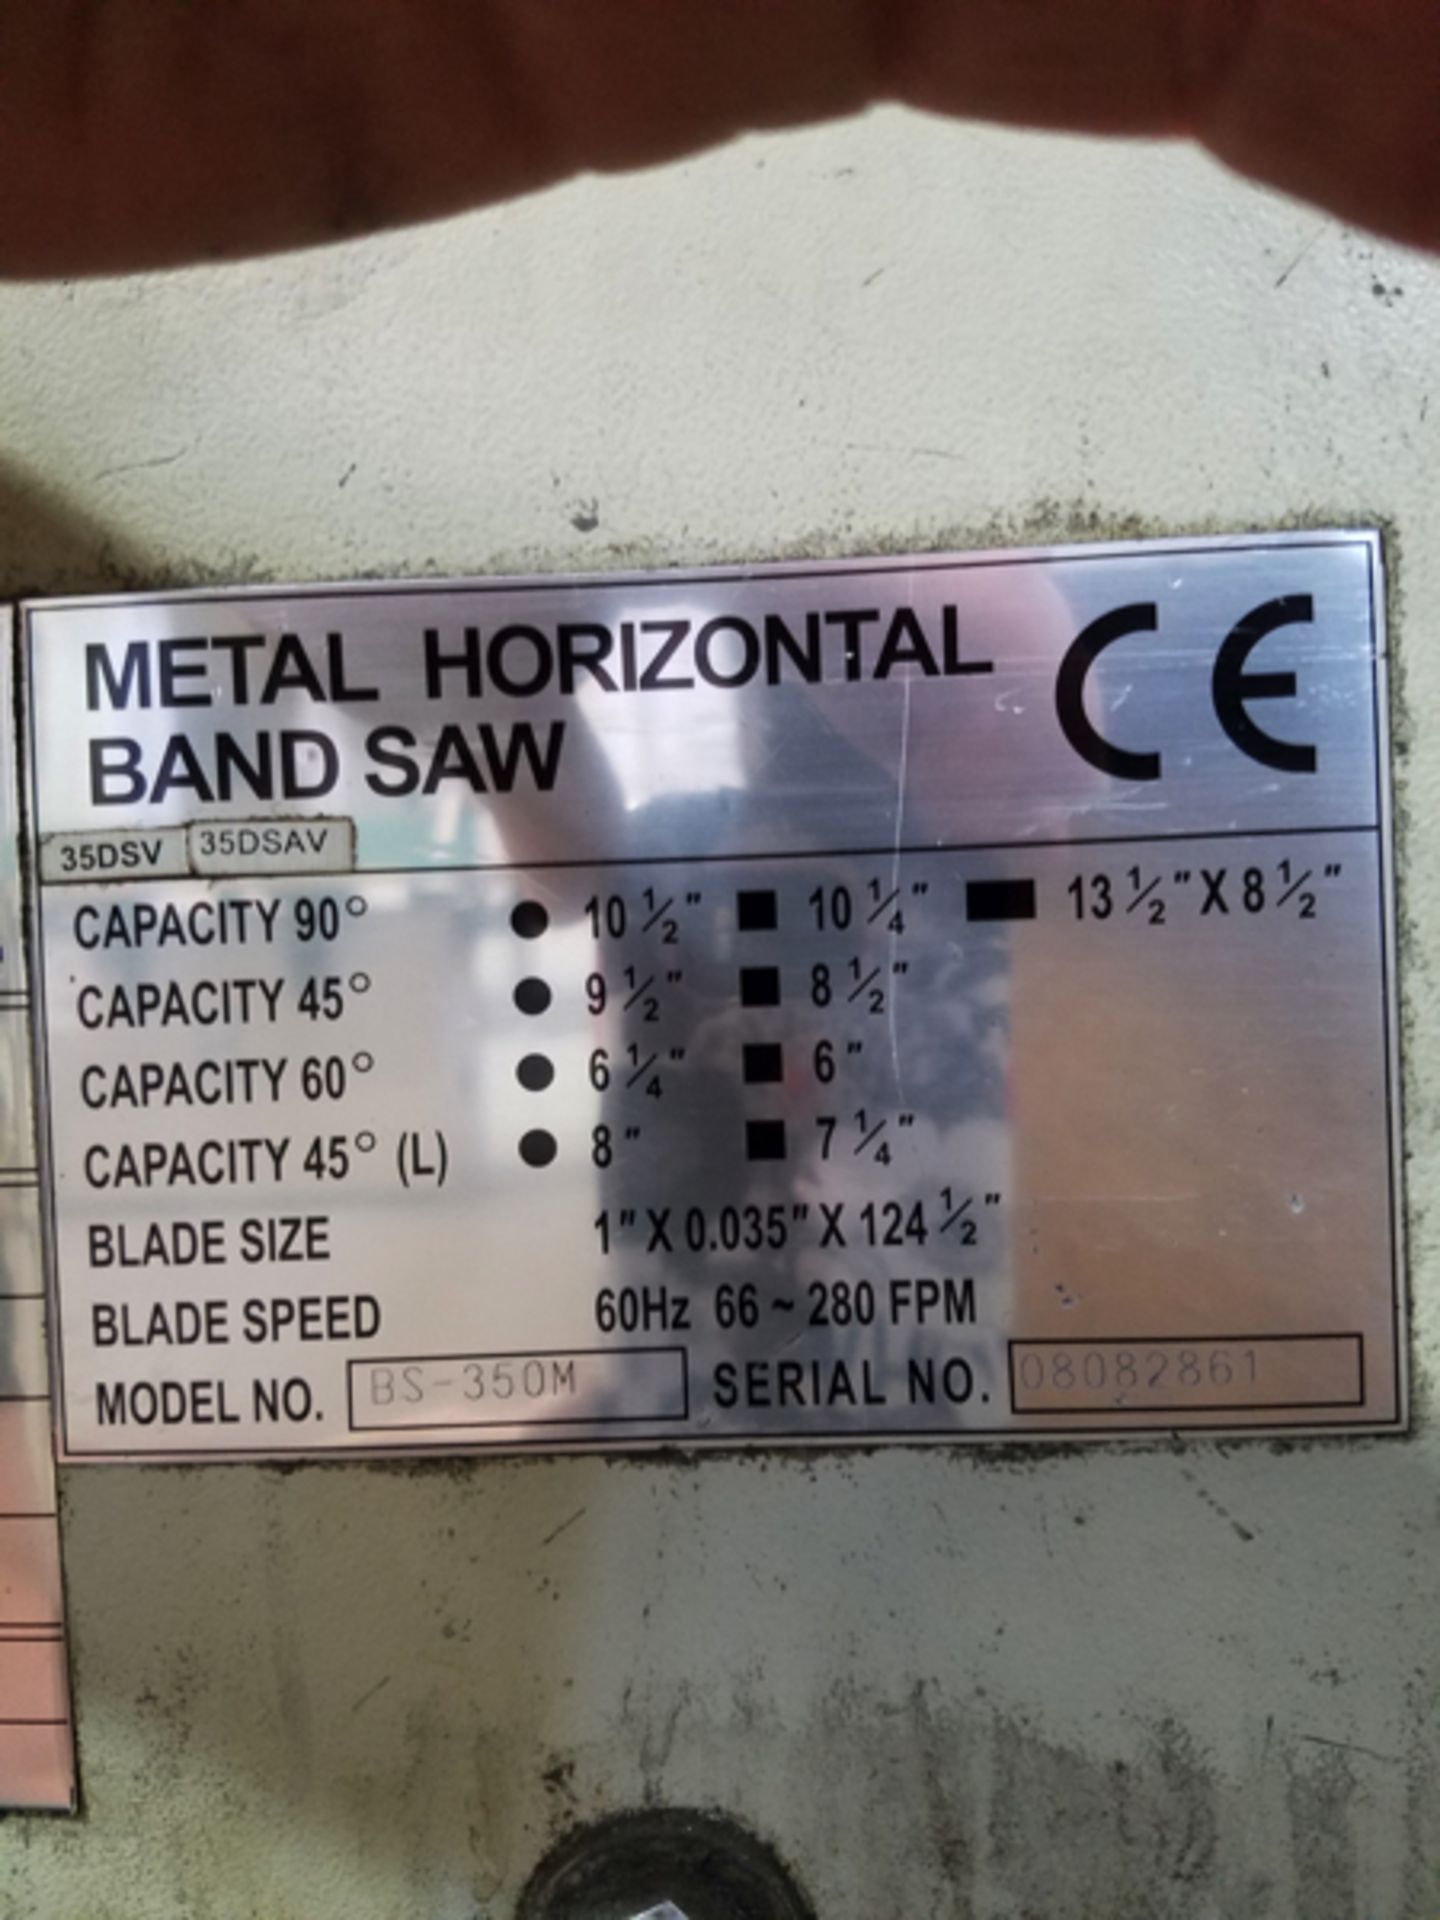 Horizontal Miter Band Saw, M# BS-350M, S/N 08082861 | Rigging Price: $210 - Image 2 of 2